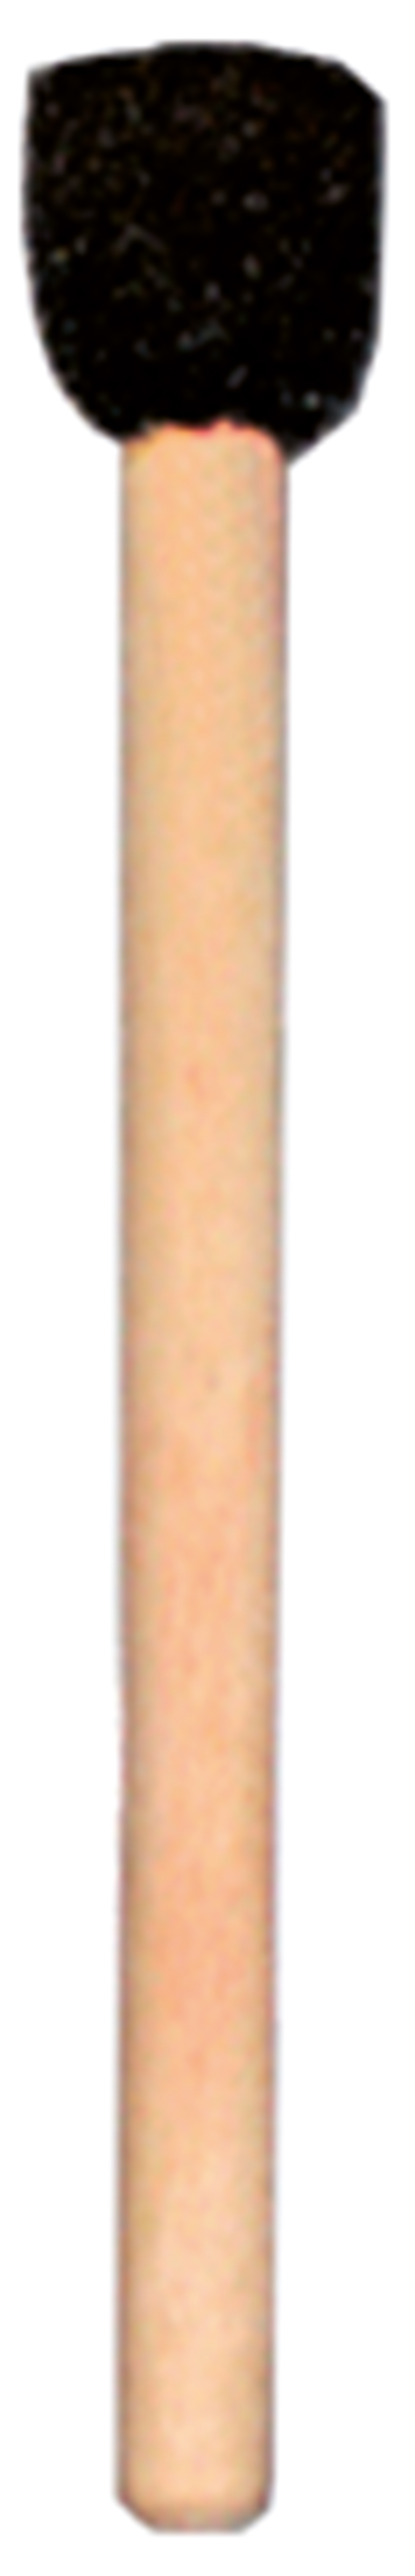 Runder Schwammpinsel ca. 12mm Ø